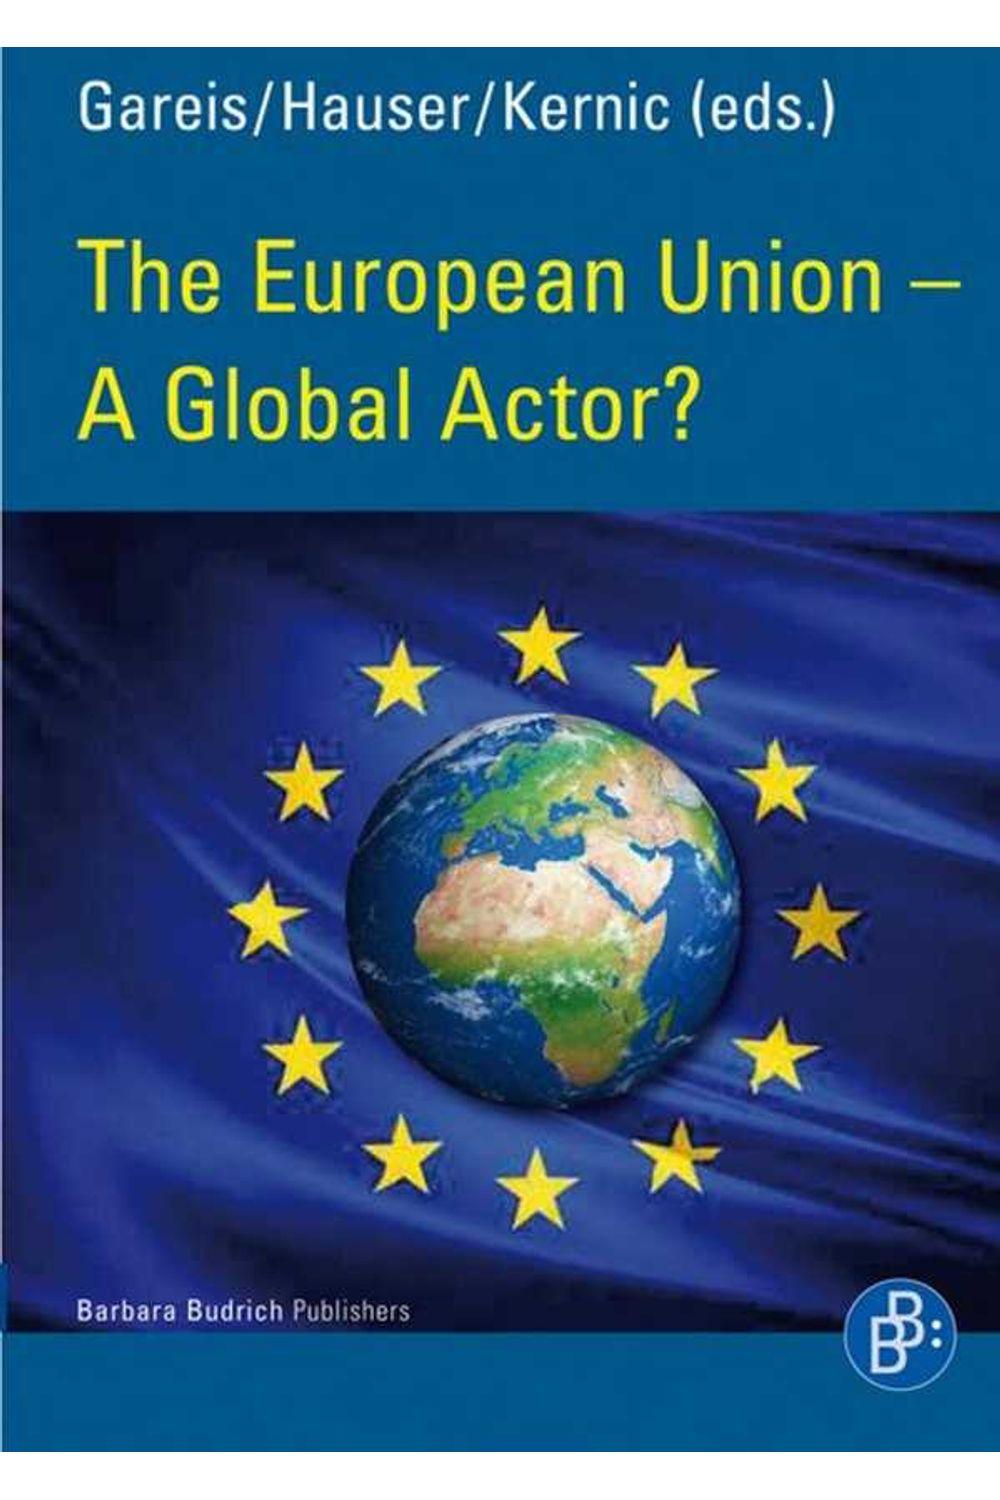 bw-the-european-union-ndash-a-global-actor-verlag-barbara-budrich-9783866495203